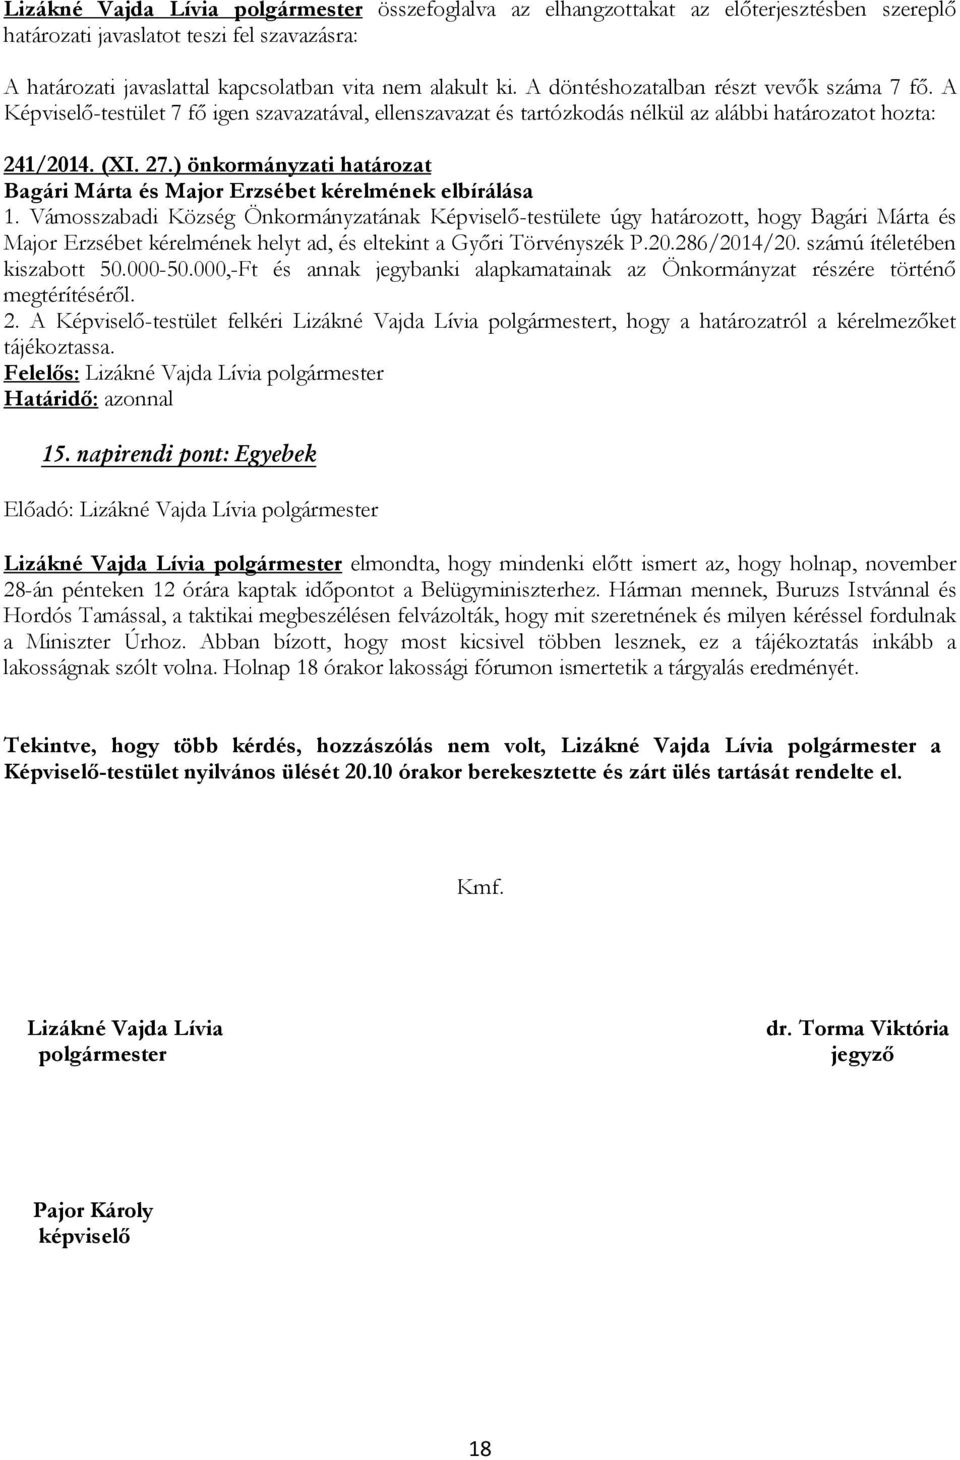 Vámosszabadi Község Önkormányzatának Képviselő-testülete úgy határozott, hogy Bagári Márta és Major Erzsébet kérelmének helyt ad, és eltekint a Győri Törvényszék P.20.286/2014/20.